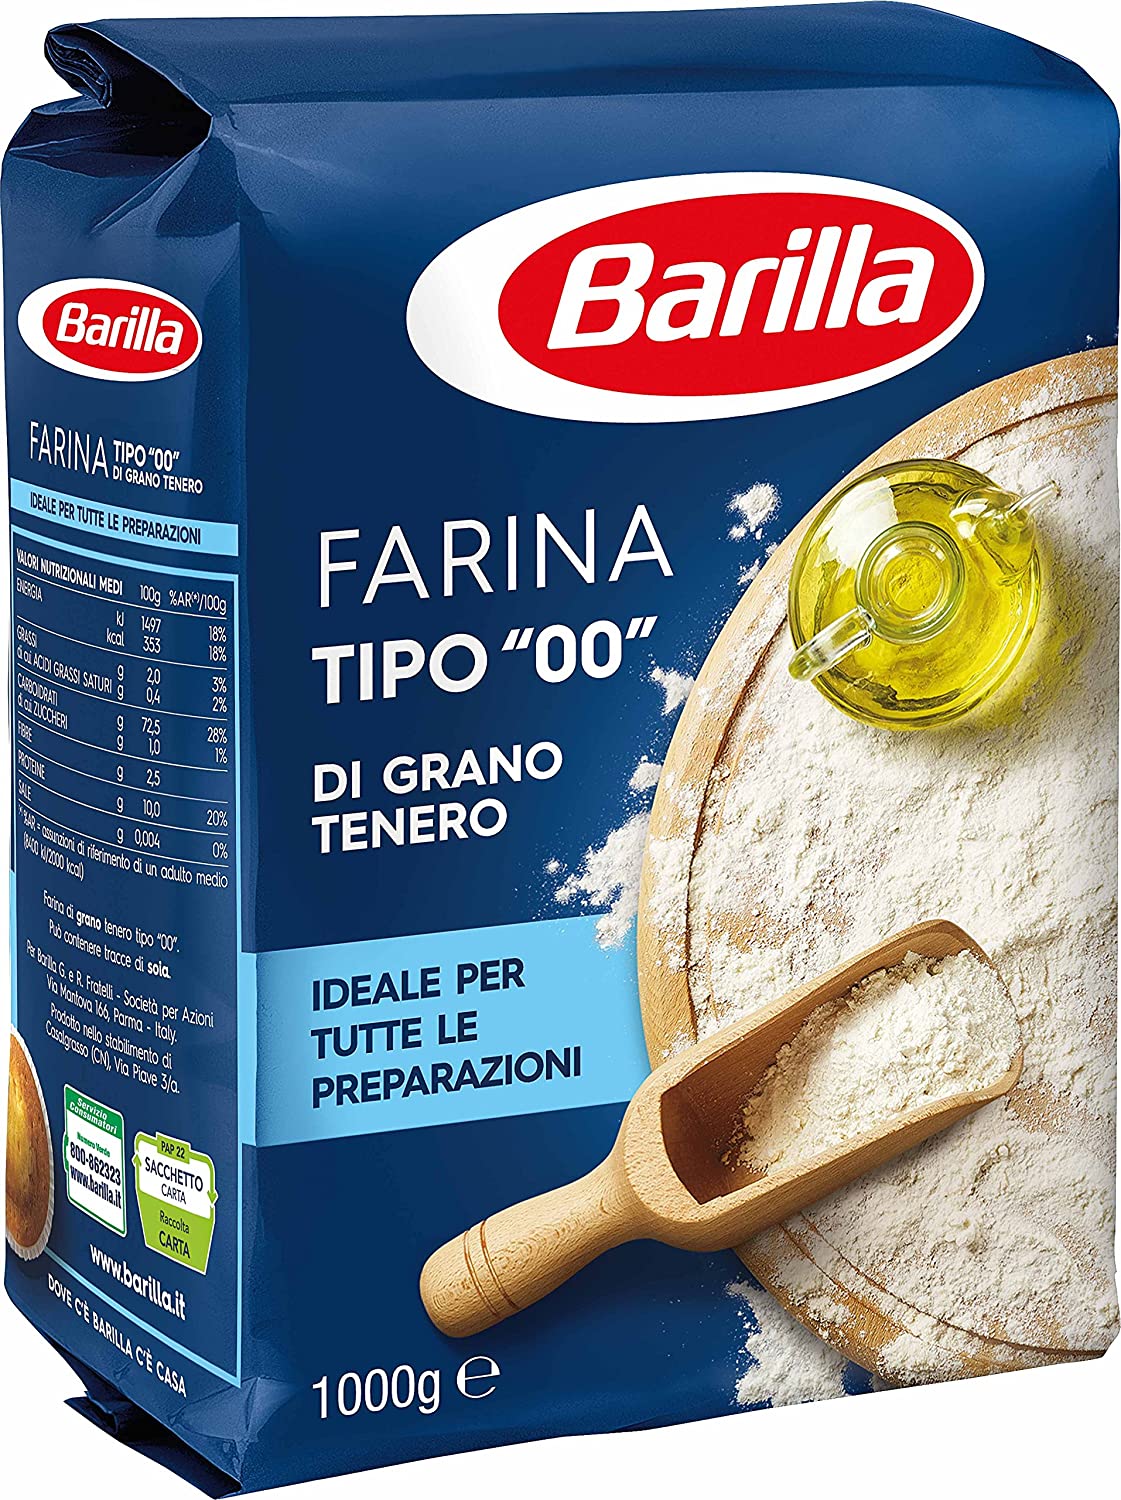 Farina Barilla Tipo 00